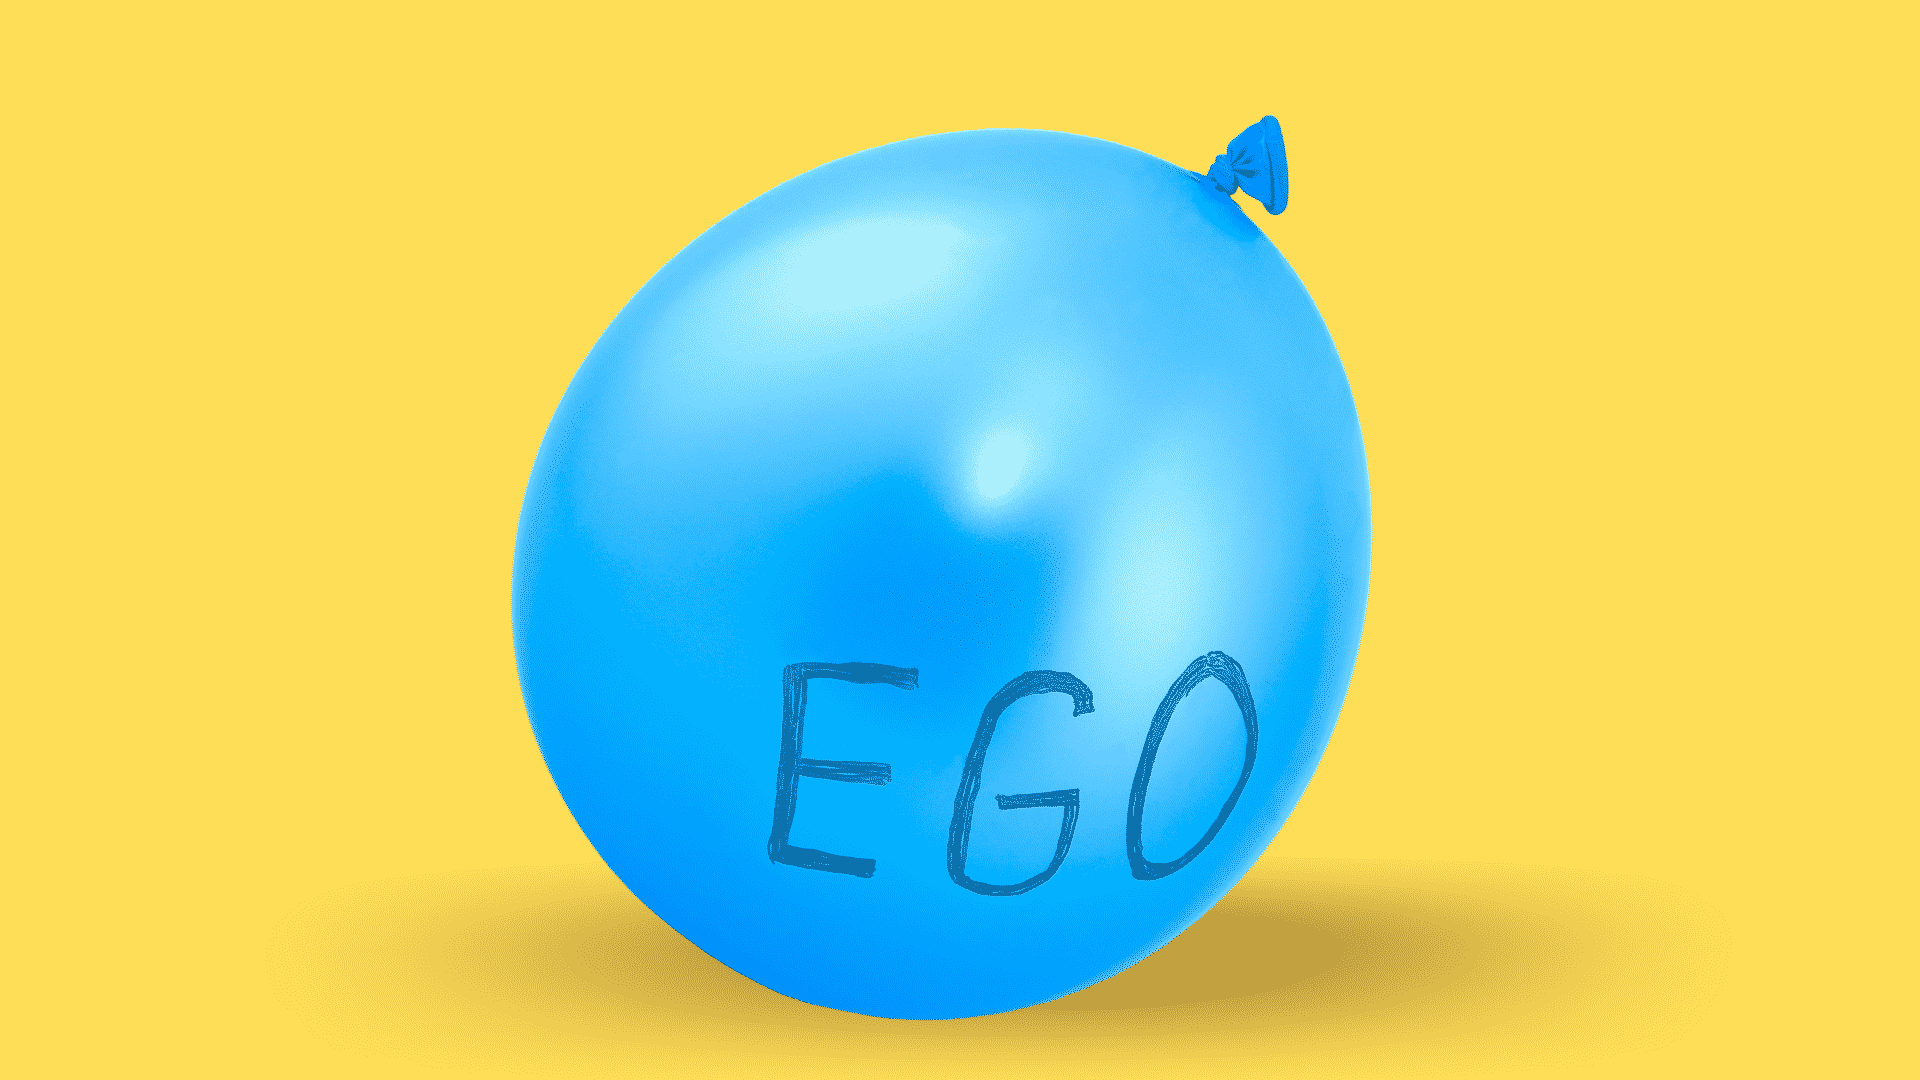 Balão azul cheio escrito "ego" representando o "ego inflado" sobre fundo amarelo